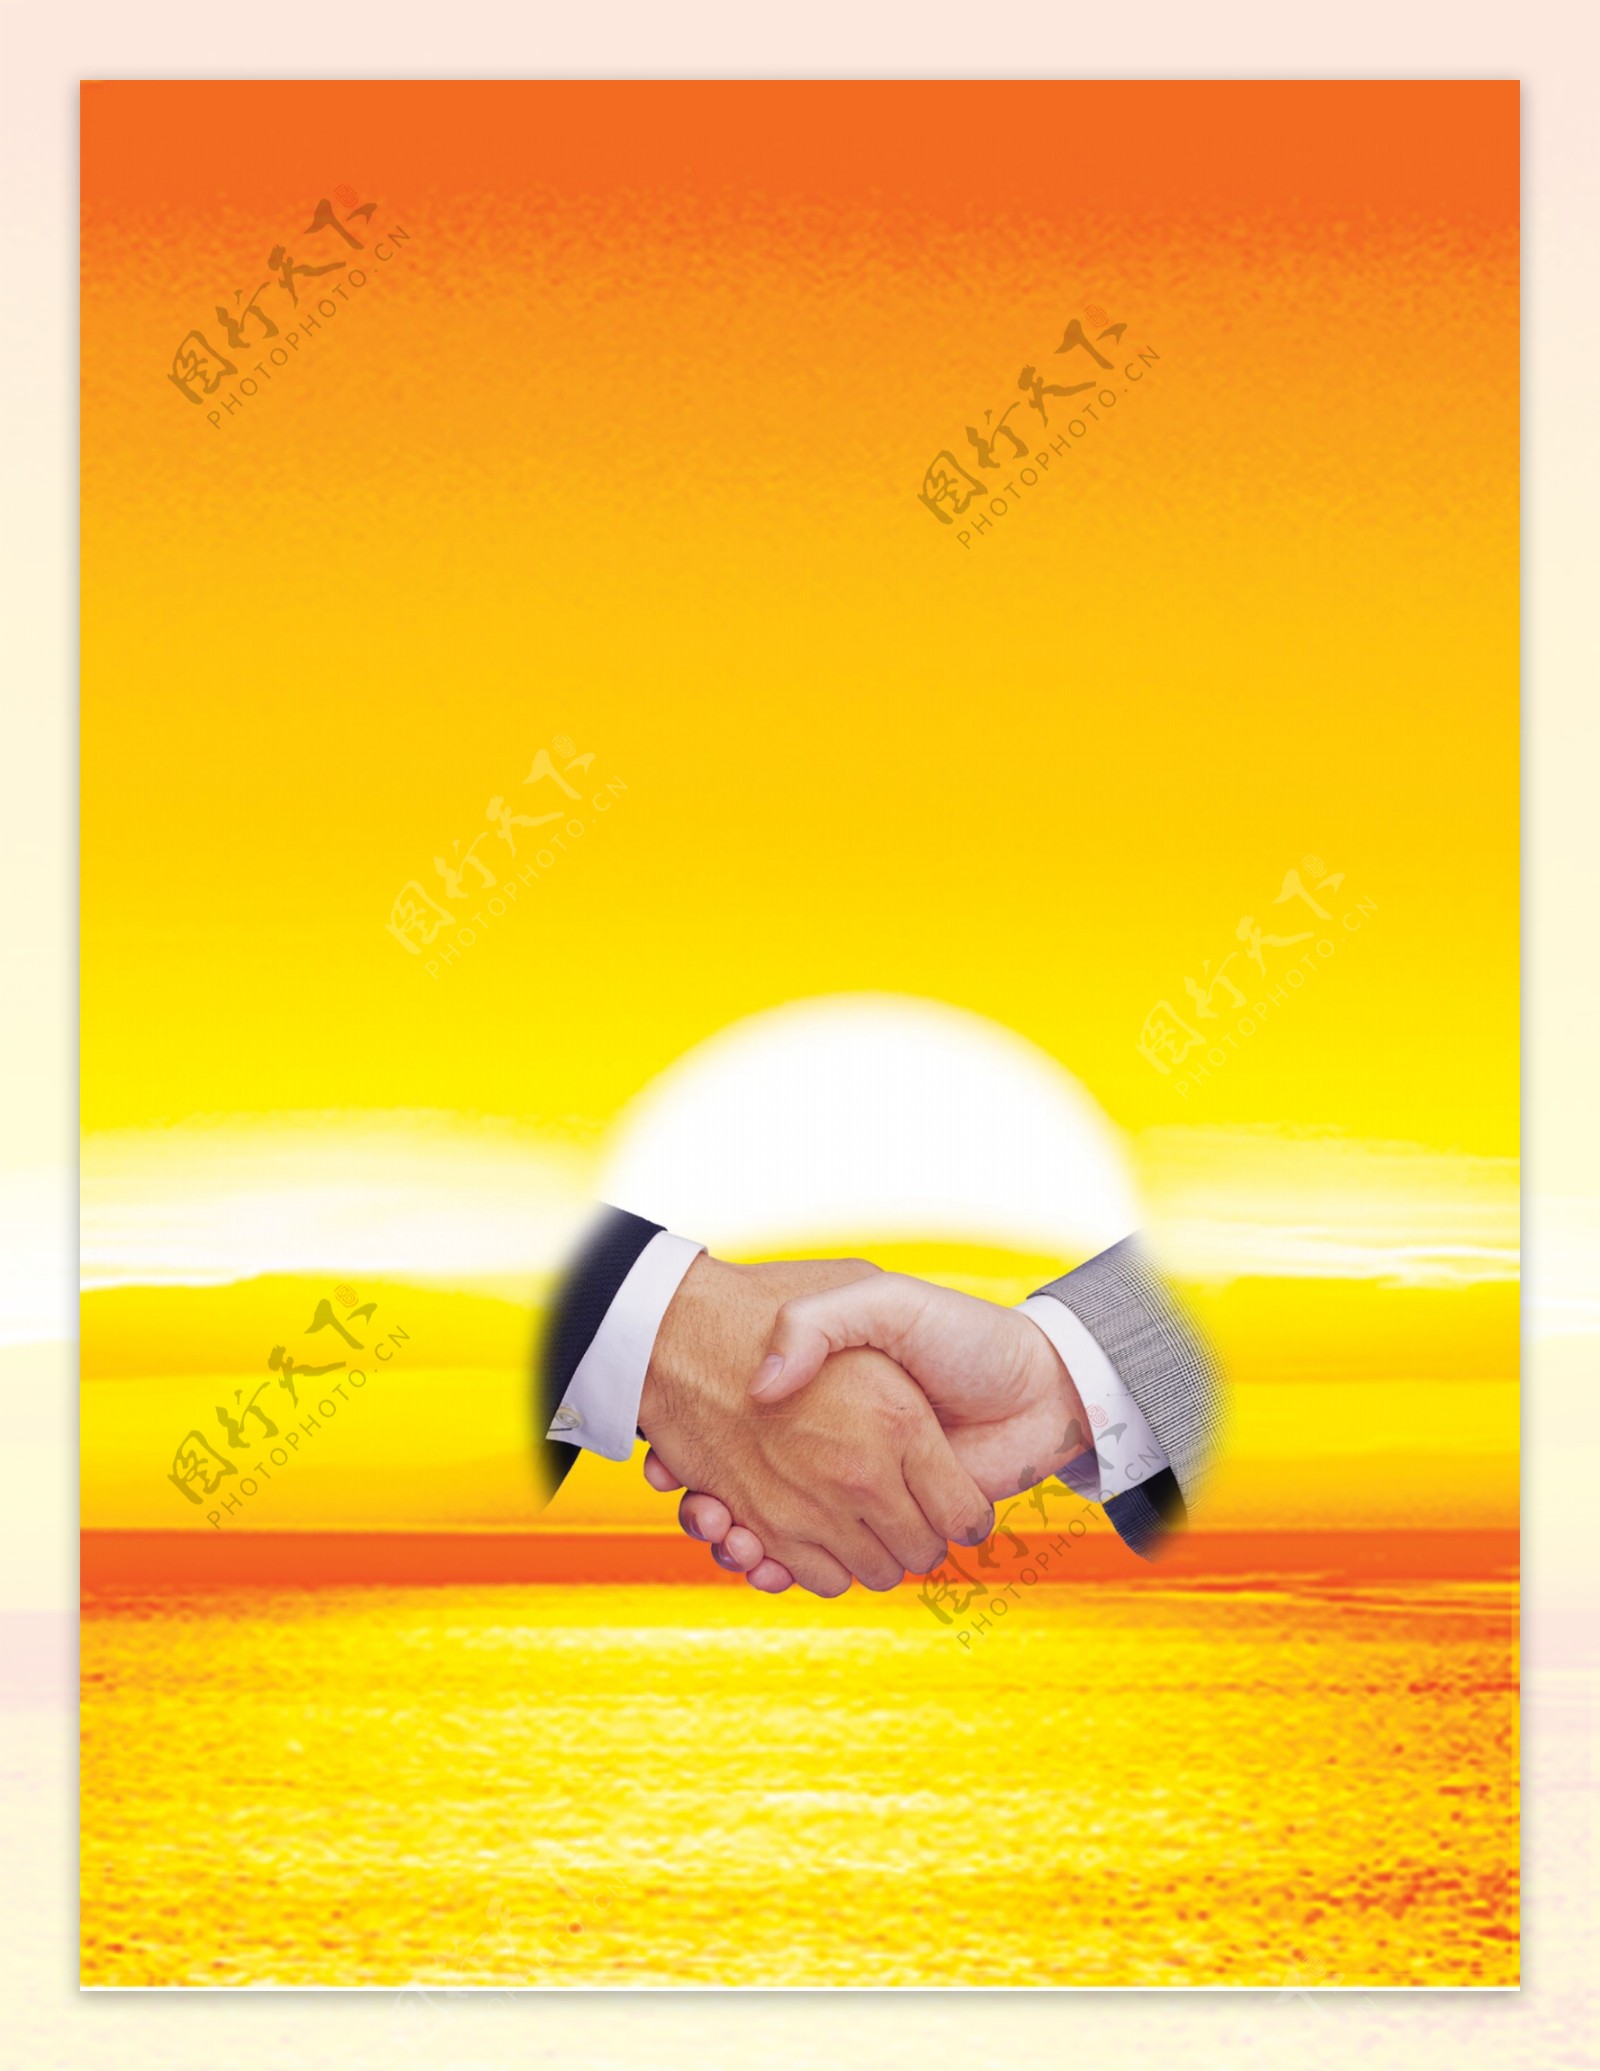 握手与朝阳图片